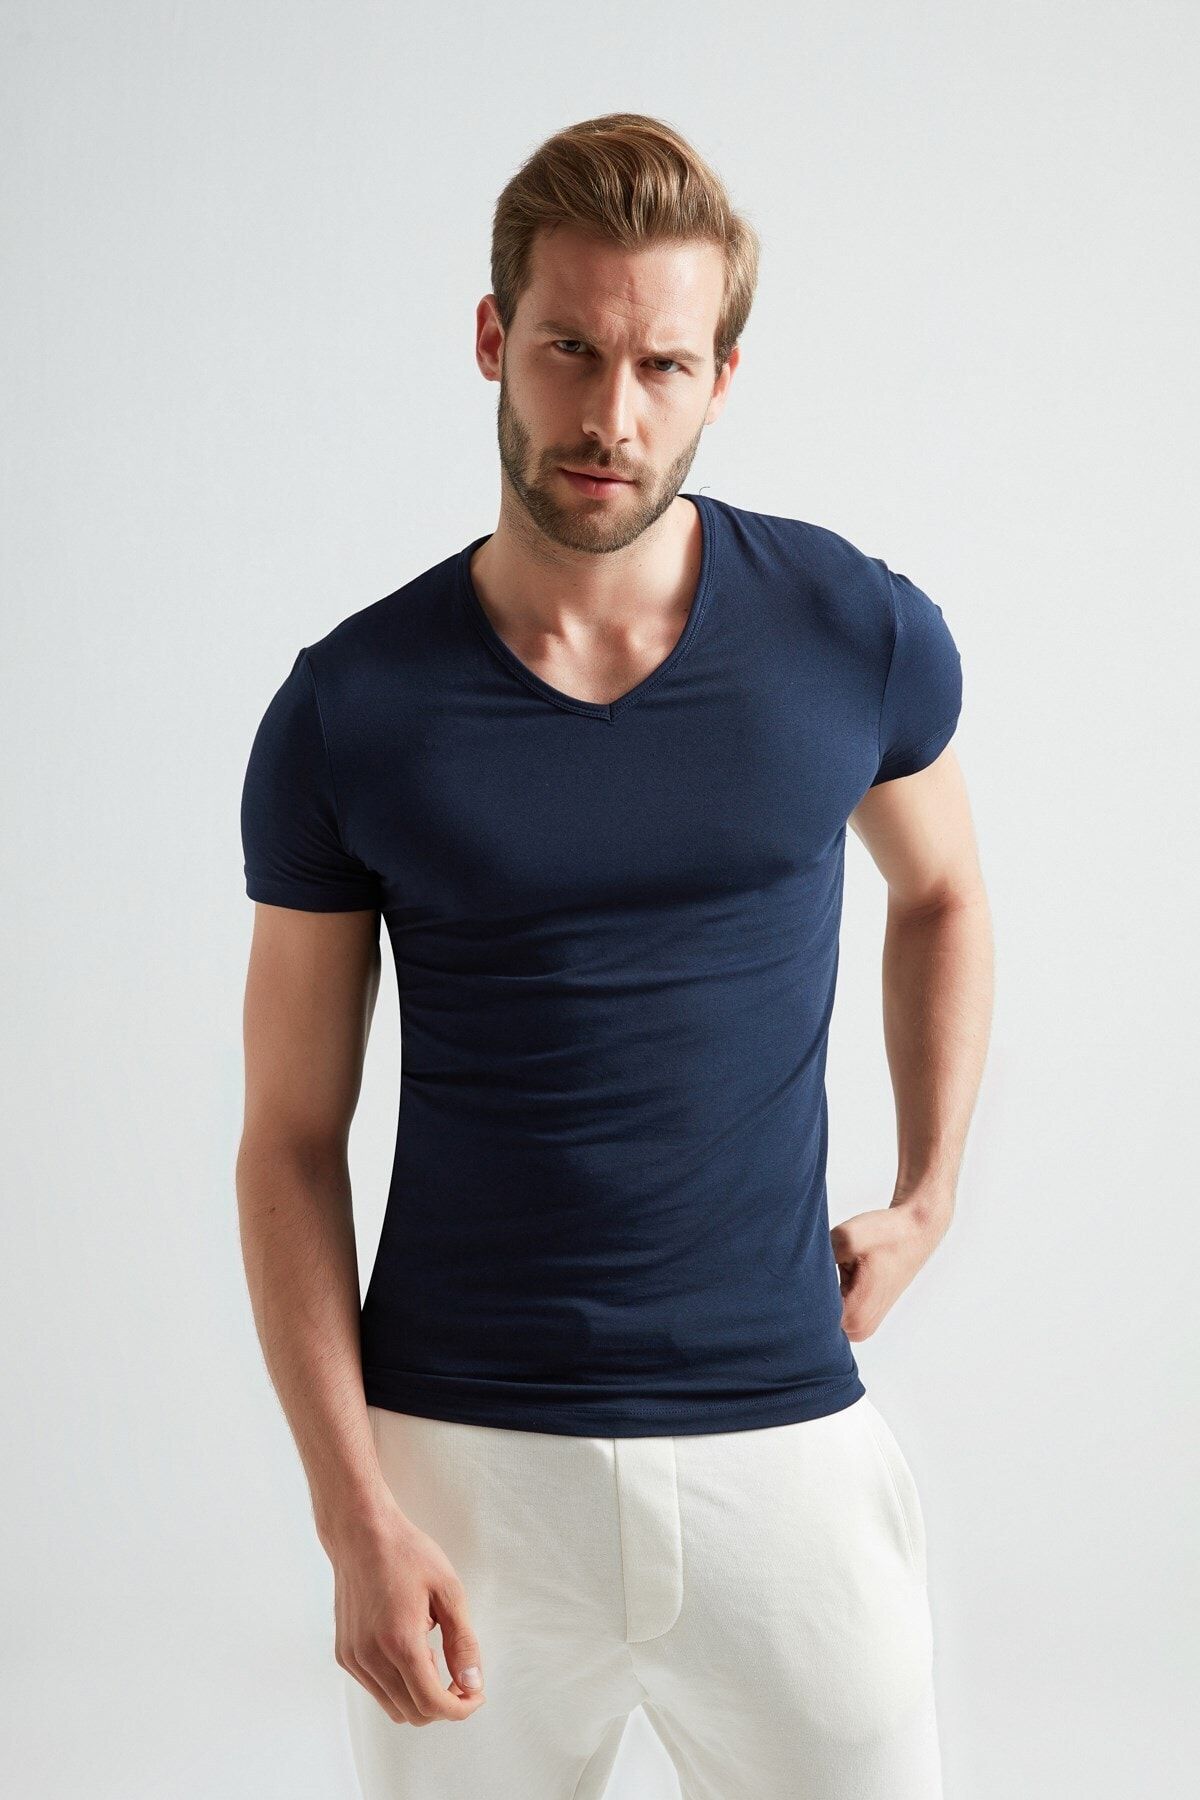 ERDEM İÇ GİYİM Erdem Lacivert V-yaka Slim Unisex T-shirt 1025